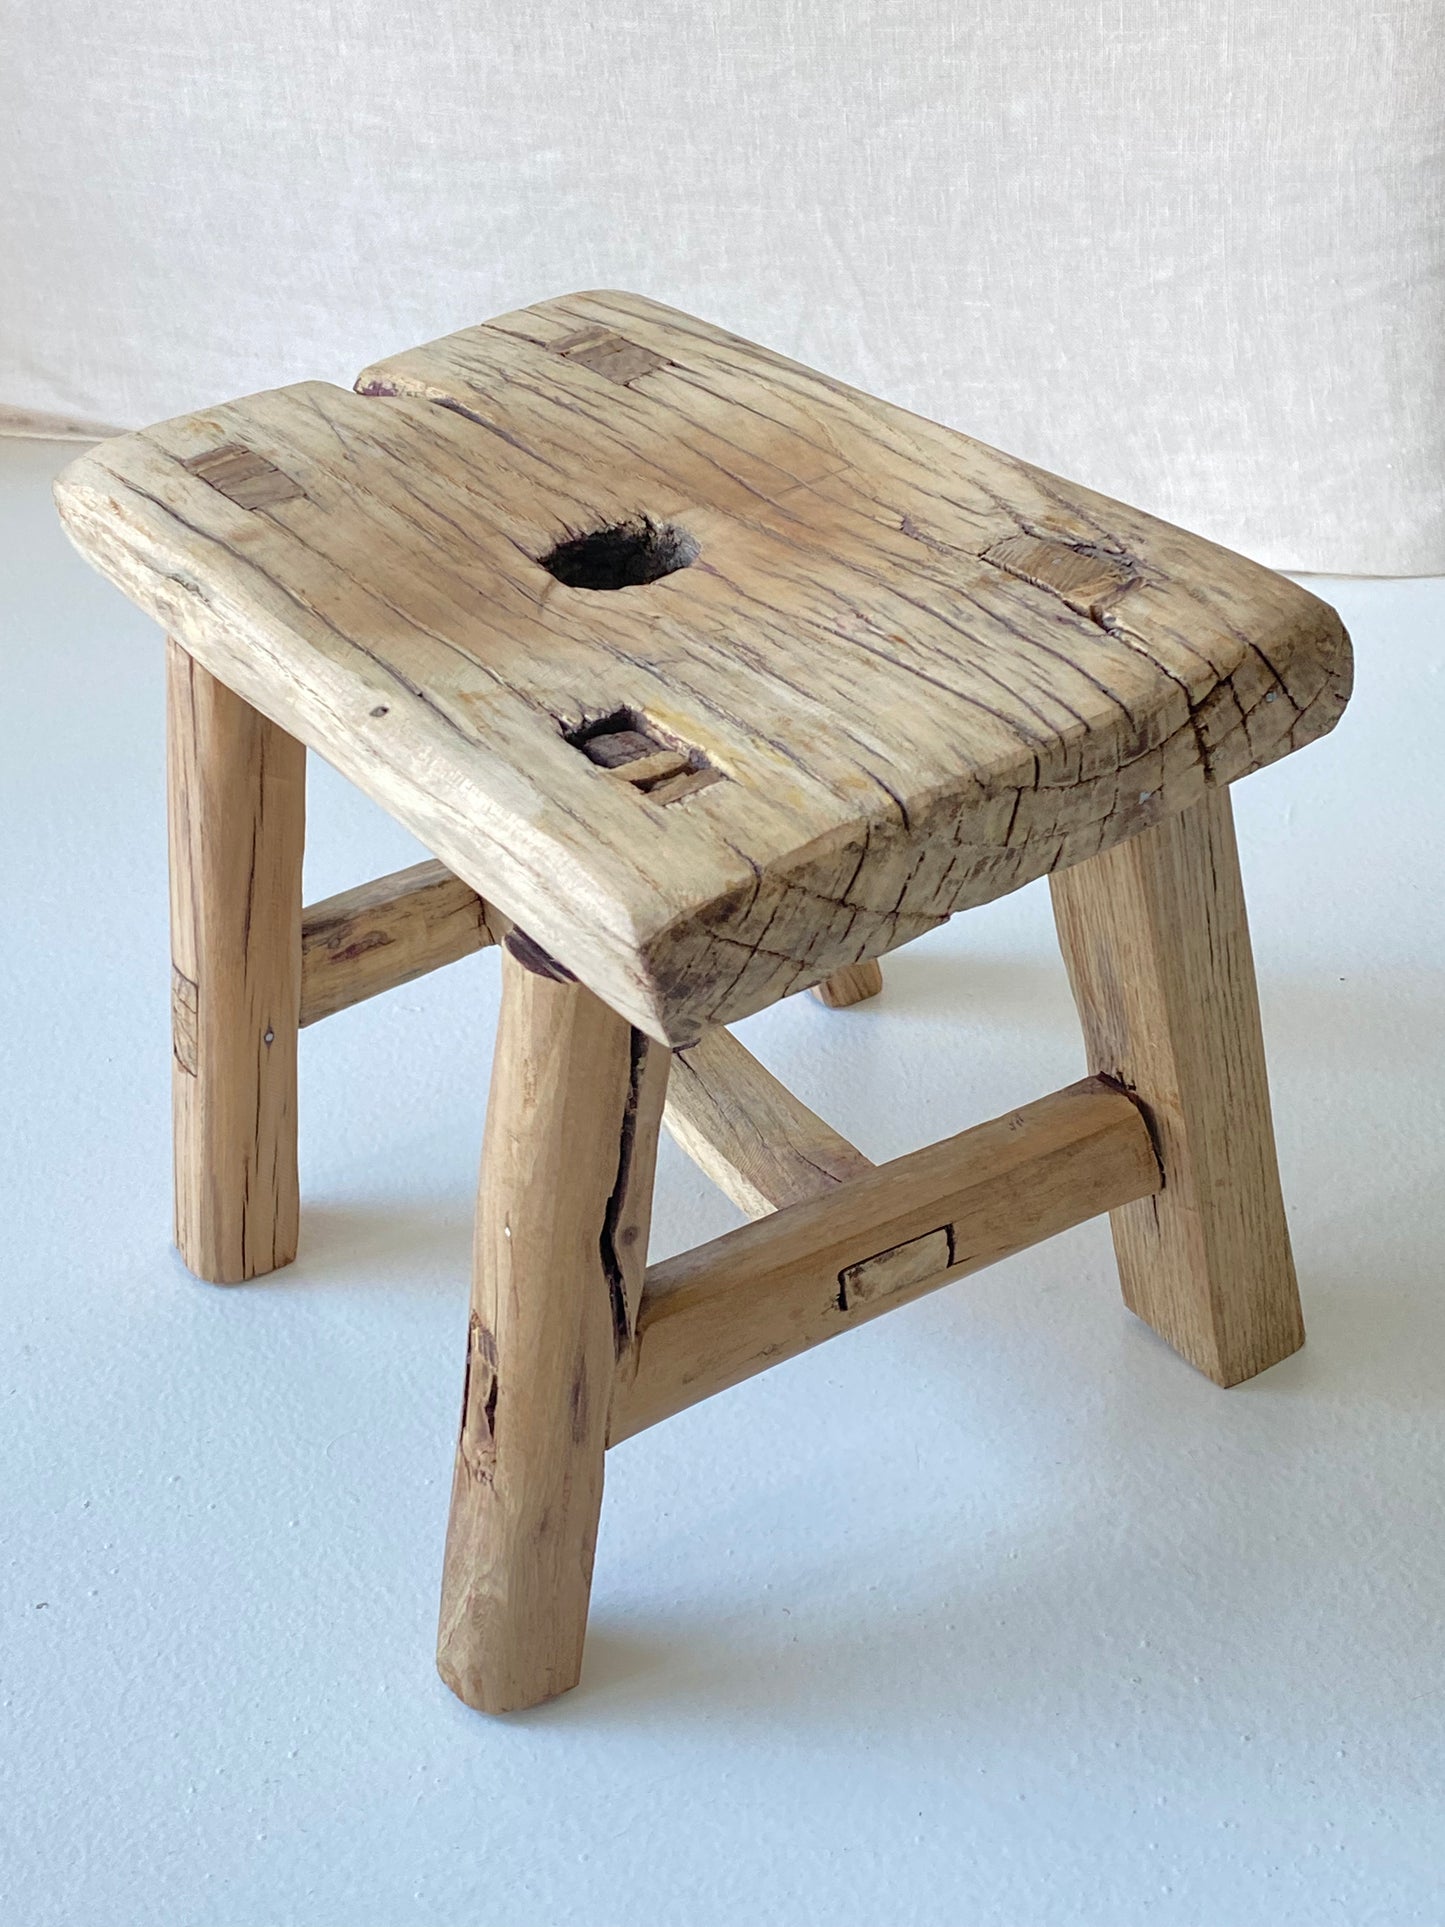 Wooden mini stool #4 26,5x16x19,5cm